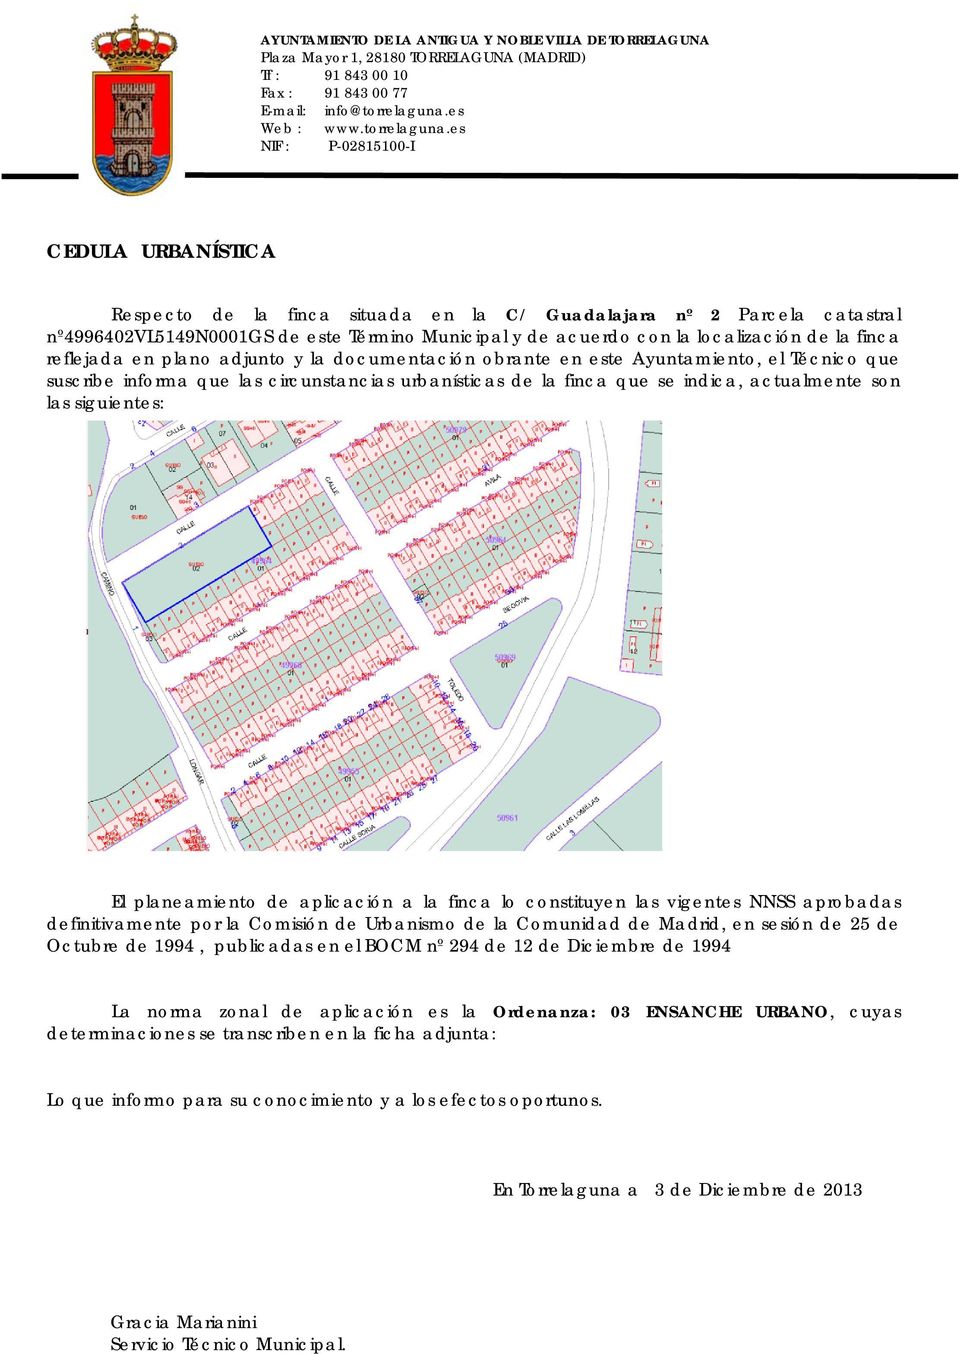 planeamiento de aplicación a la finca lo constituyen las vigentes NNSS aprobadas definitivamente por la Comisión de Urbanismo de la Comunidad de Madrid, en sesión de 25 de Octubre de 1994, publicadas